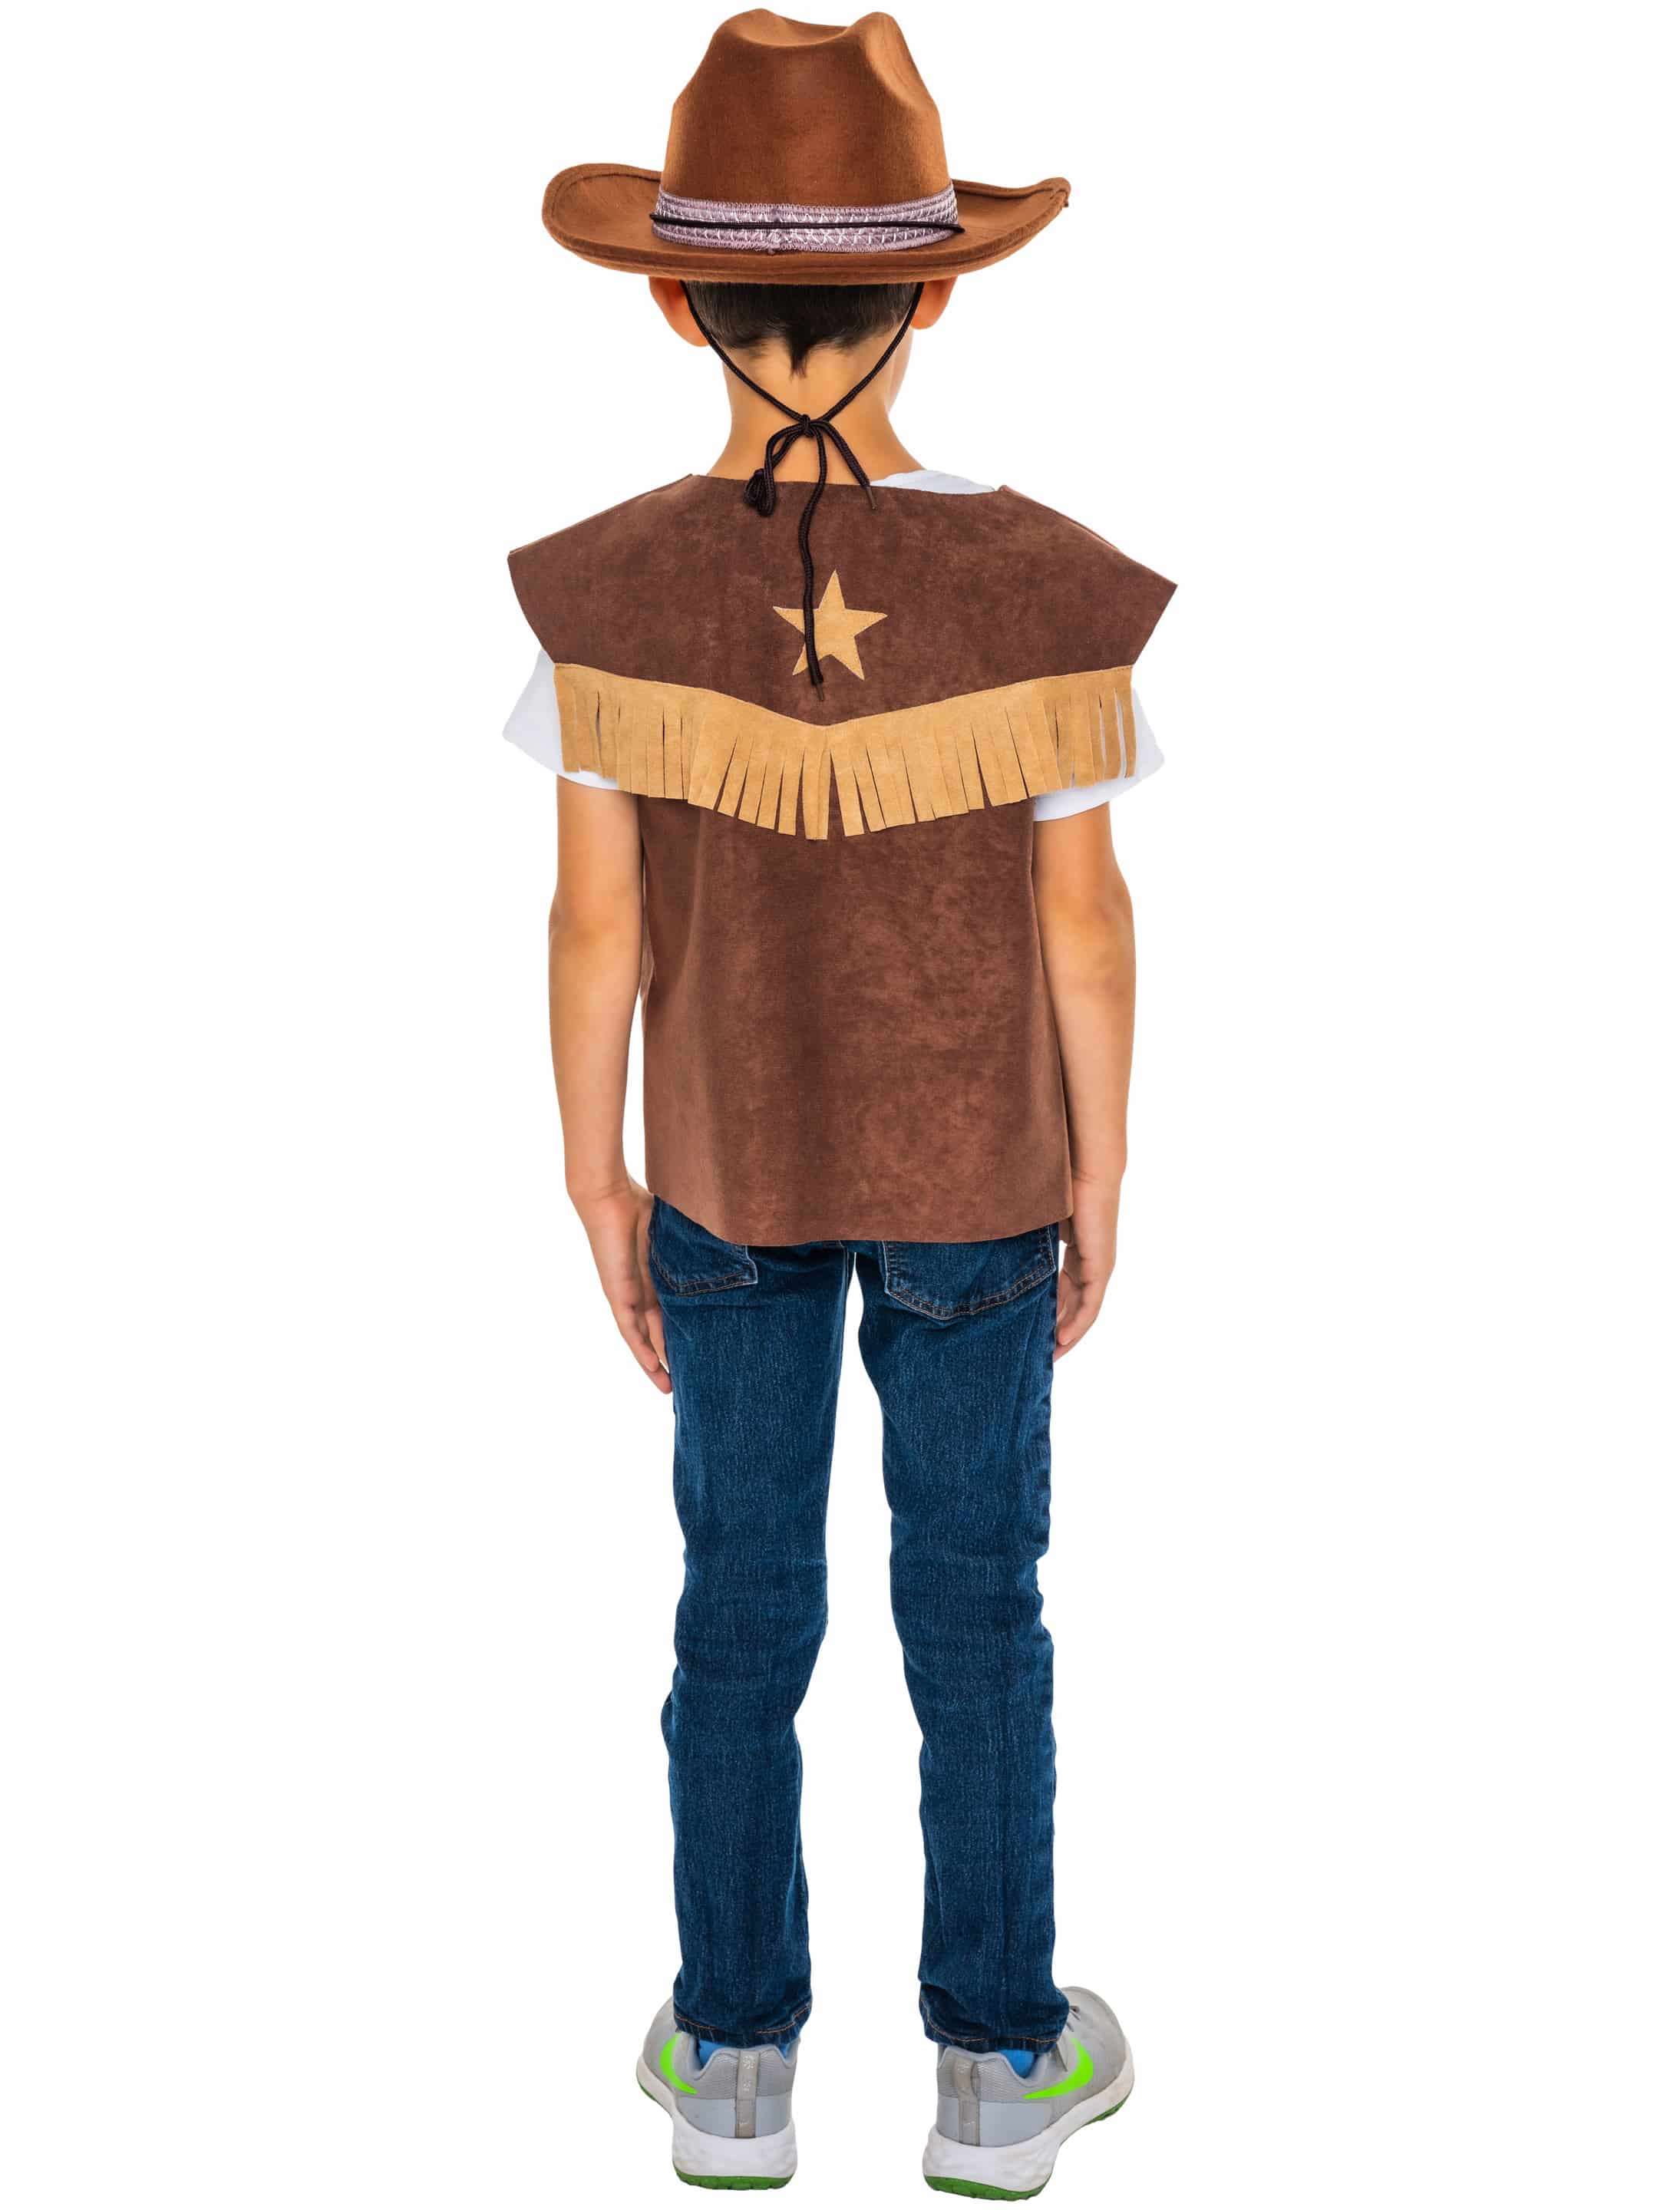 Weste Cowboy Kinder mit Stern braun 152-164